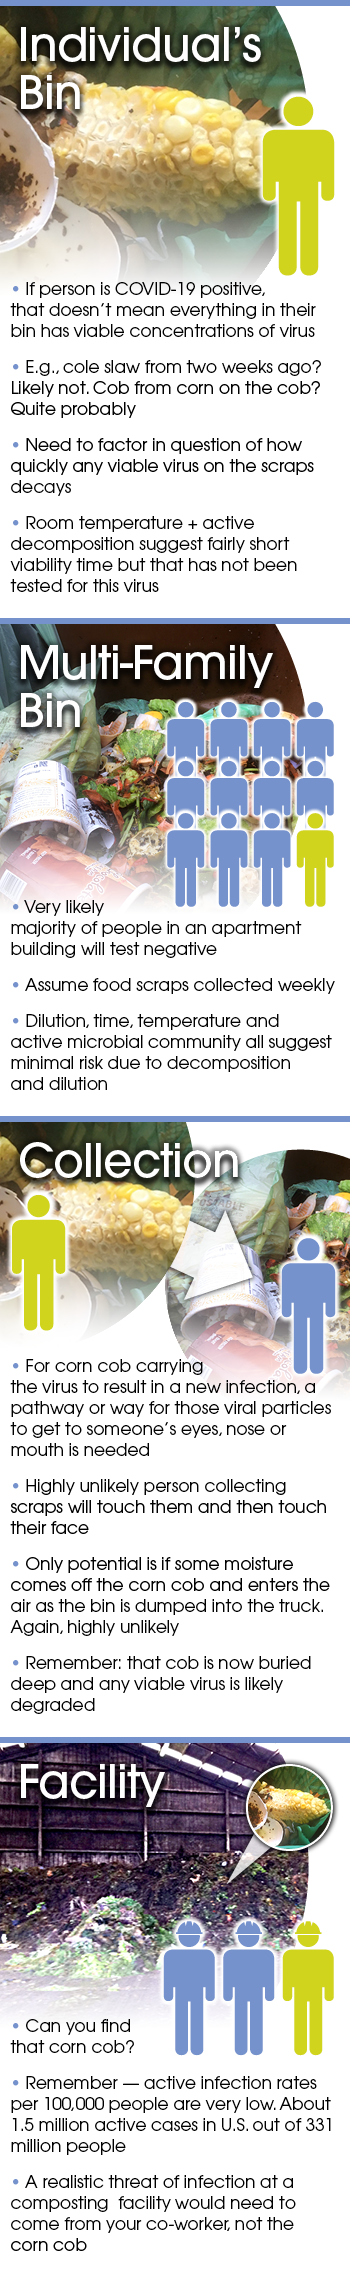 Covid Spread Through Food Waste